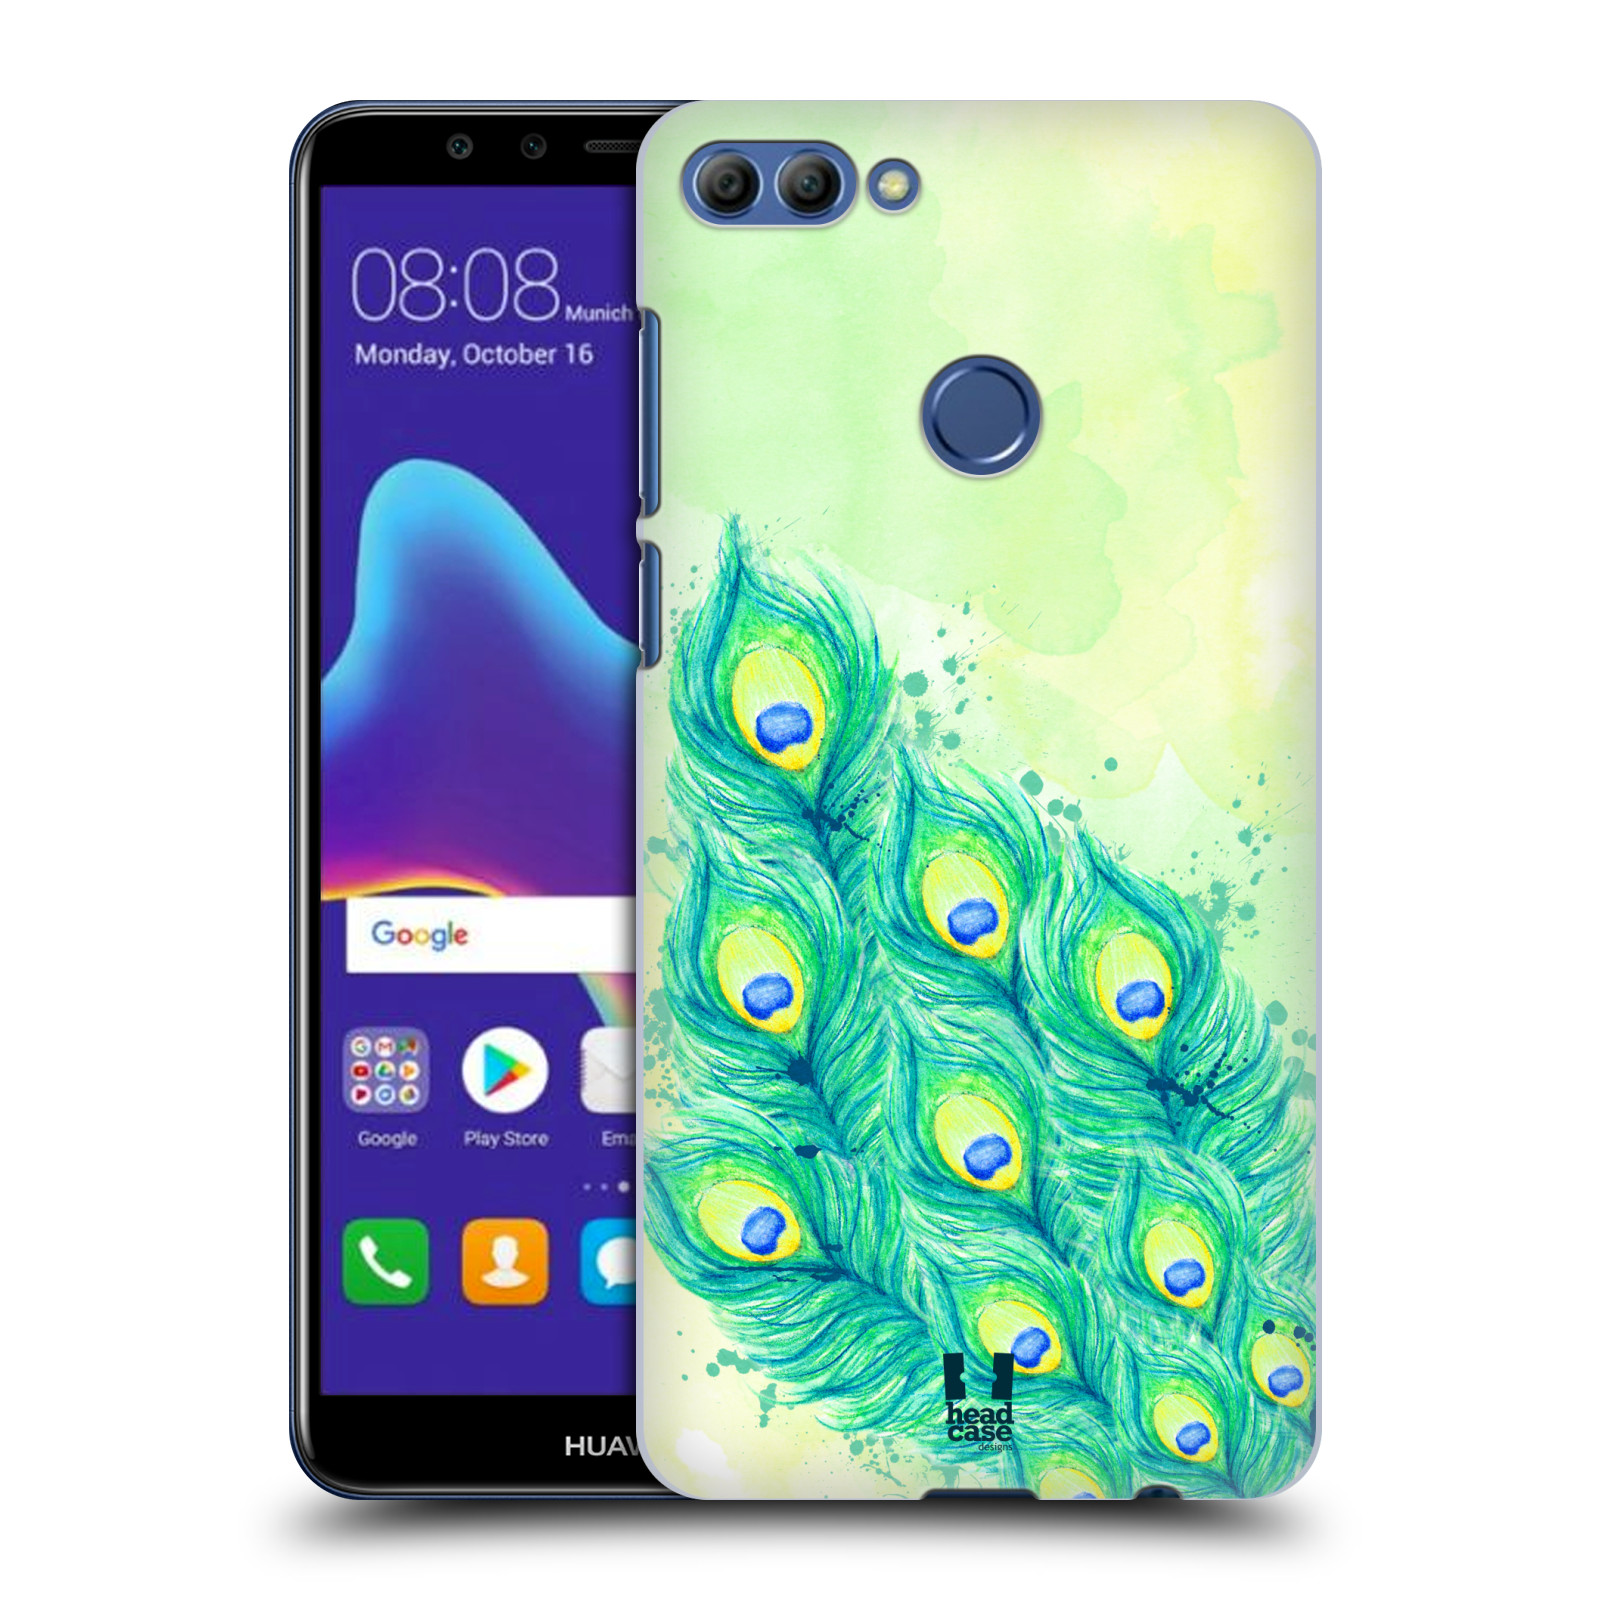 HEAD CASE plastový obal na mobil Huawei Y9 2018 vzor Paví pírka barevná MODRÁ A ZELENÁ